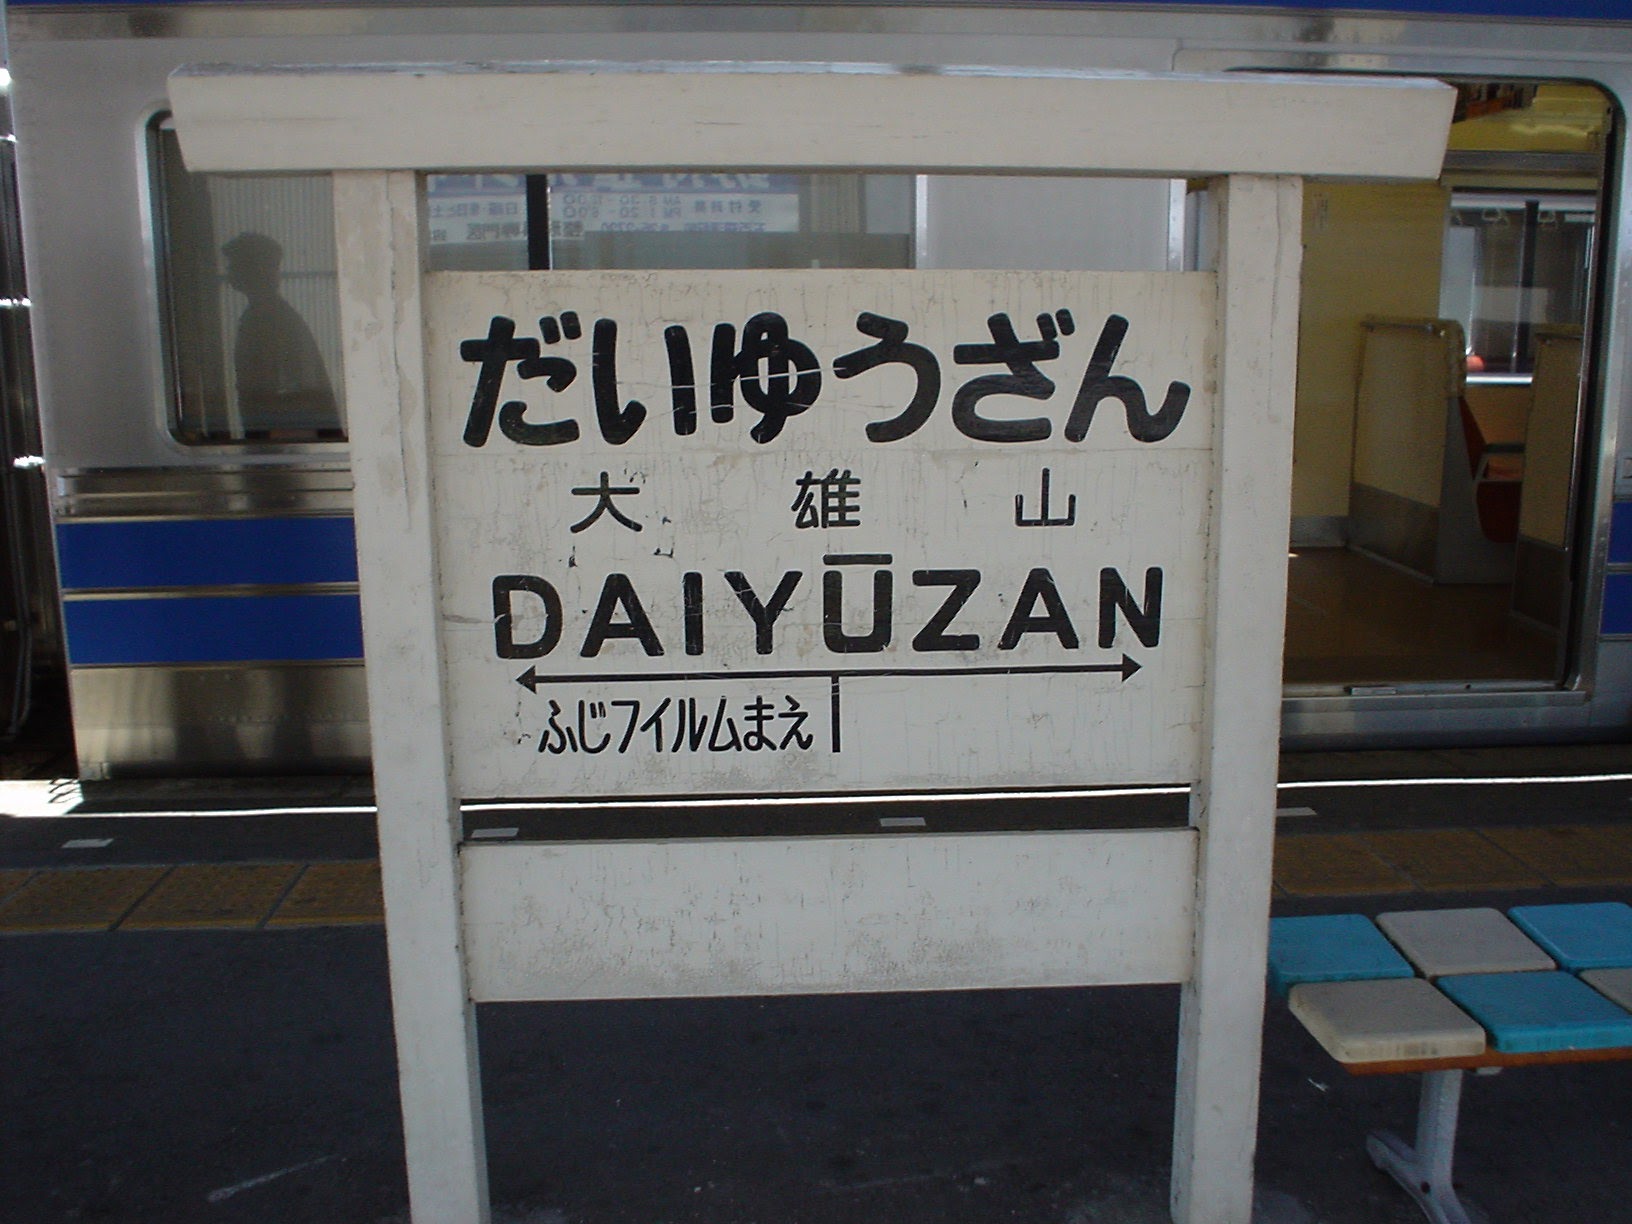 大雄山駅 (2004/6/05 撮影)